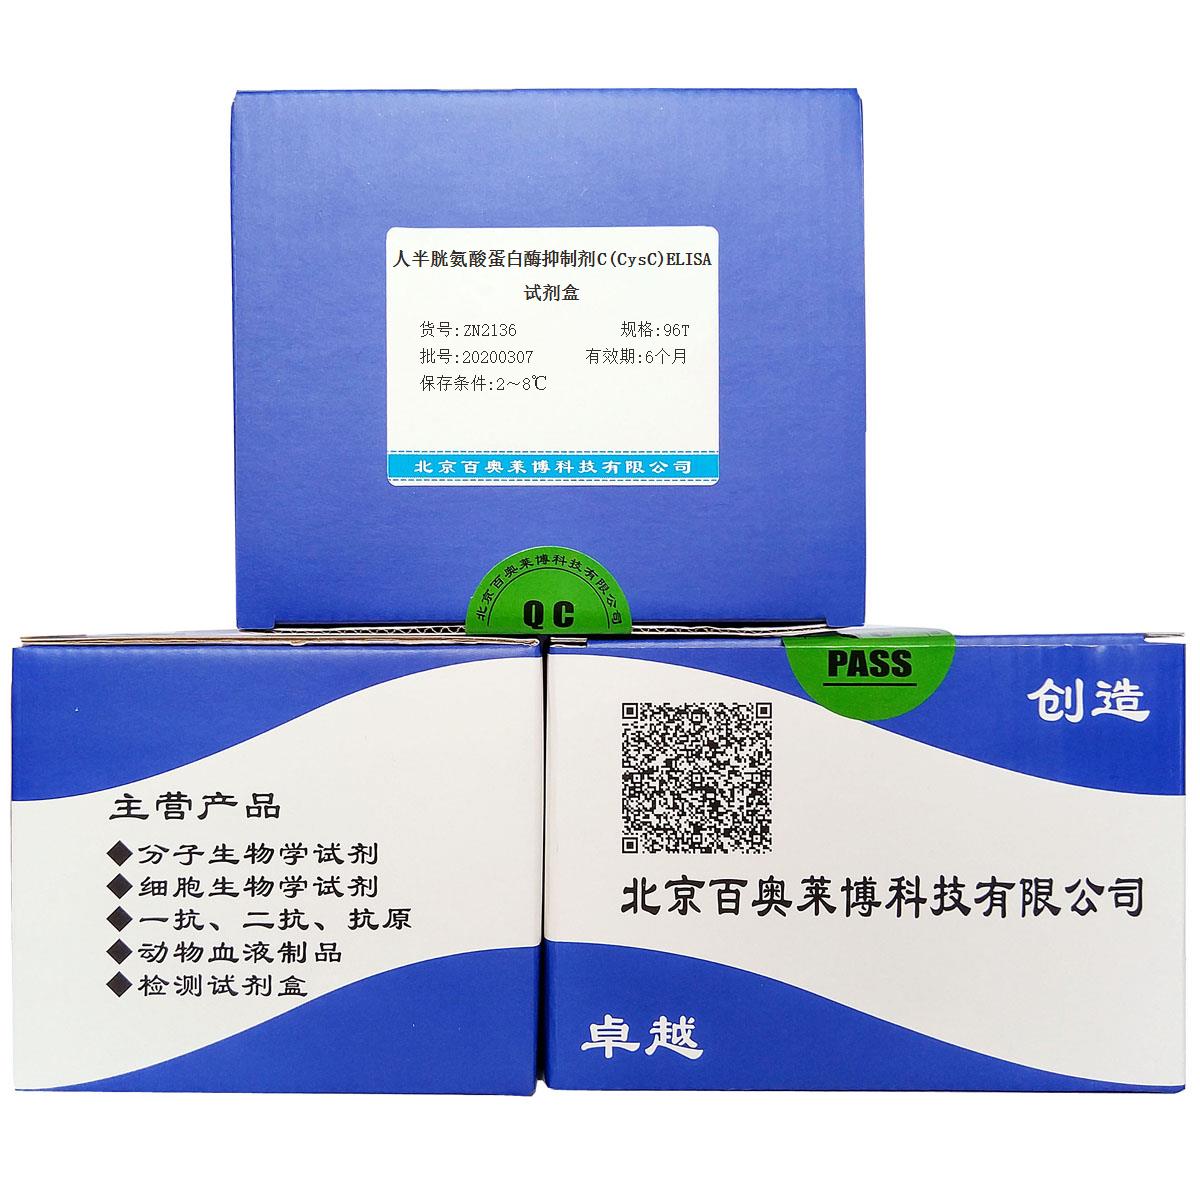 人半胱氨酸蛋白酶抑制剂C(CysC)ELISA试剂盒